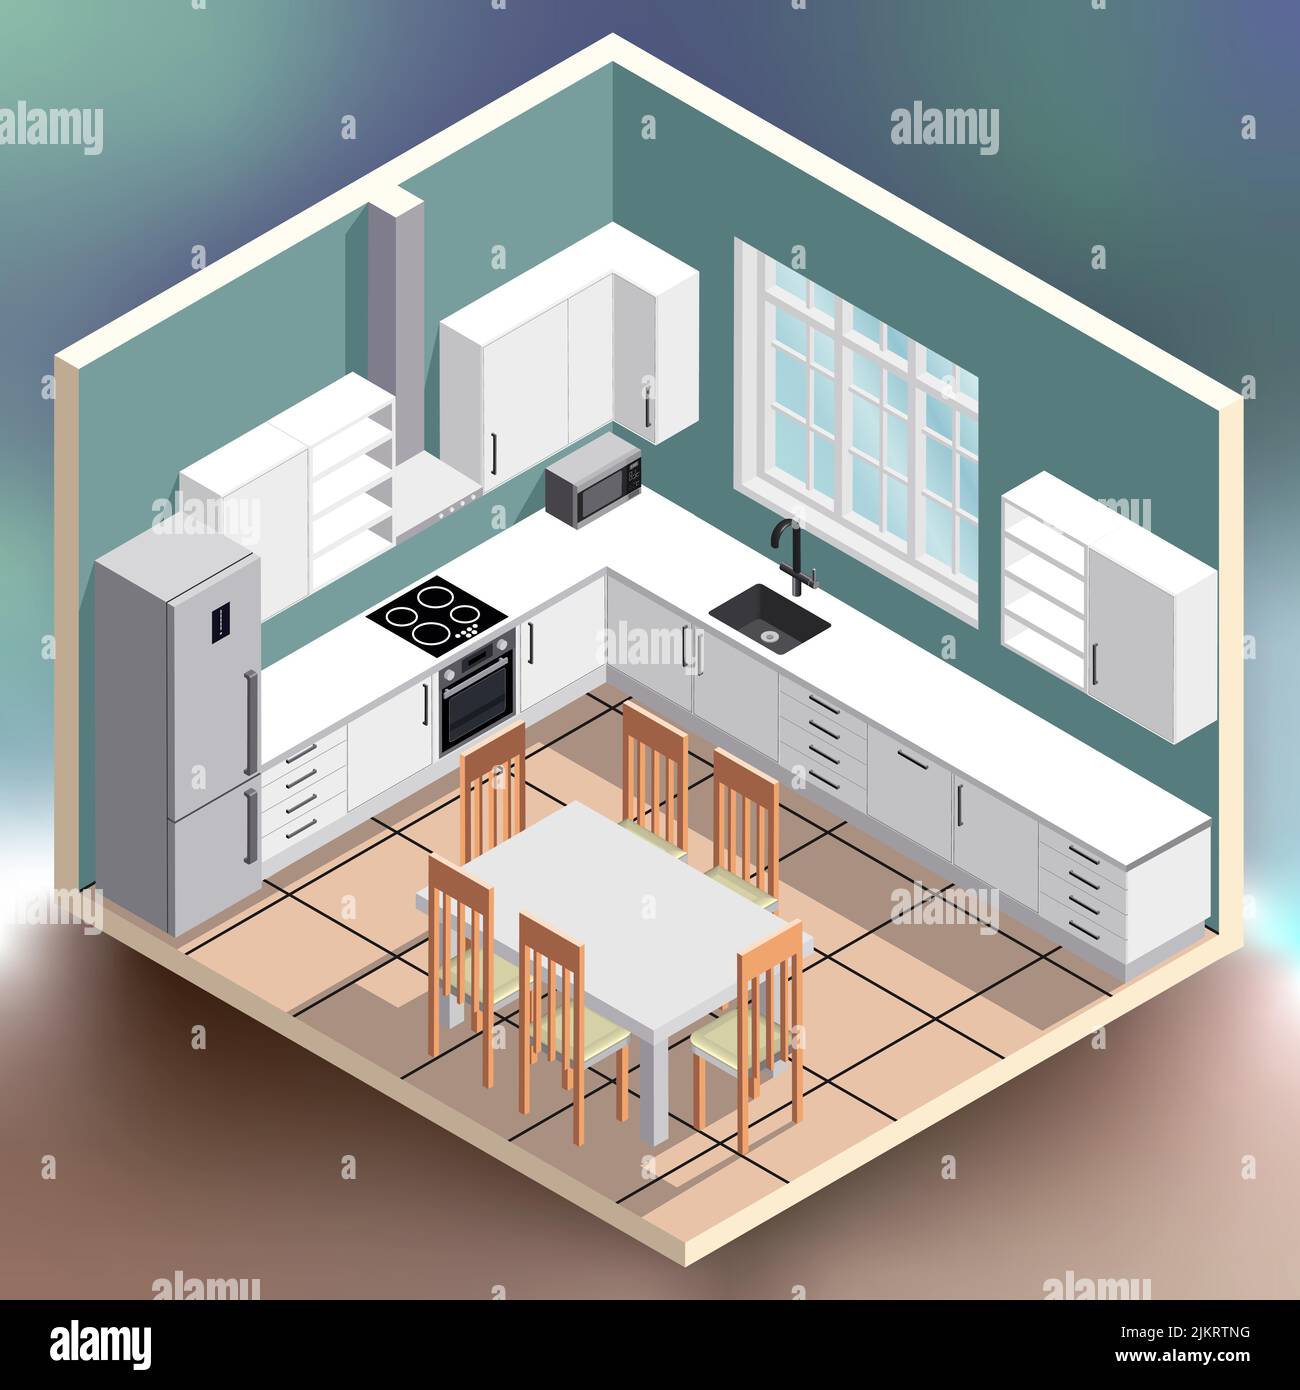 Illustrazione isometrica interna della cucina su sfondo colorato e luminoso Illustrazione Vettoriale